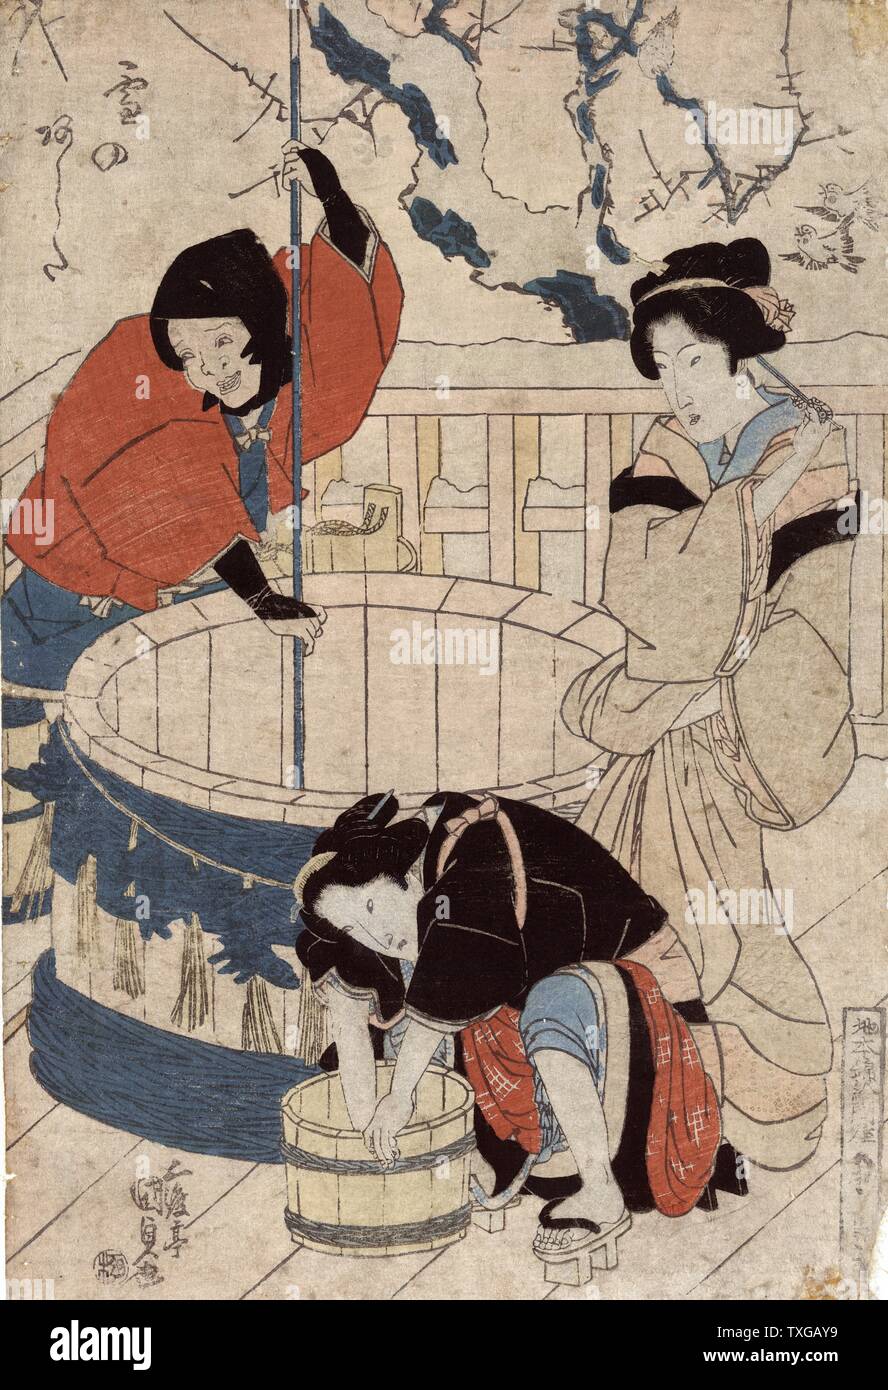 La neige de demain. Imprimer montre une femme debout près d'un puits et deux femmes, peut-être fonctionnaires, obtenir de l'eau au puits. Banque D'Images